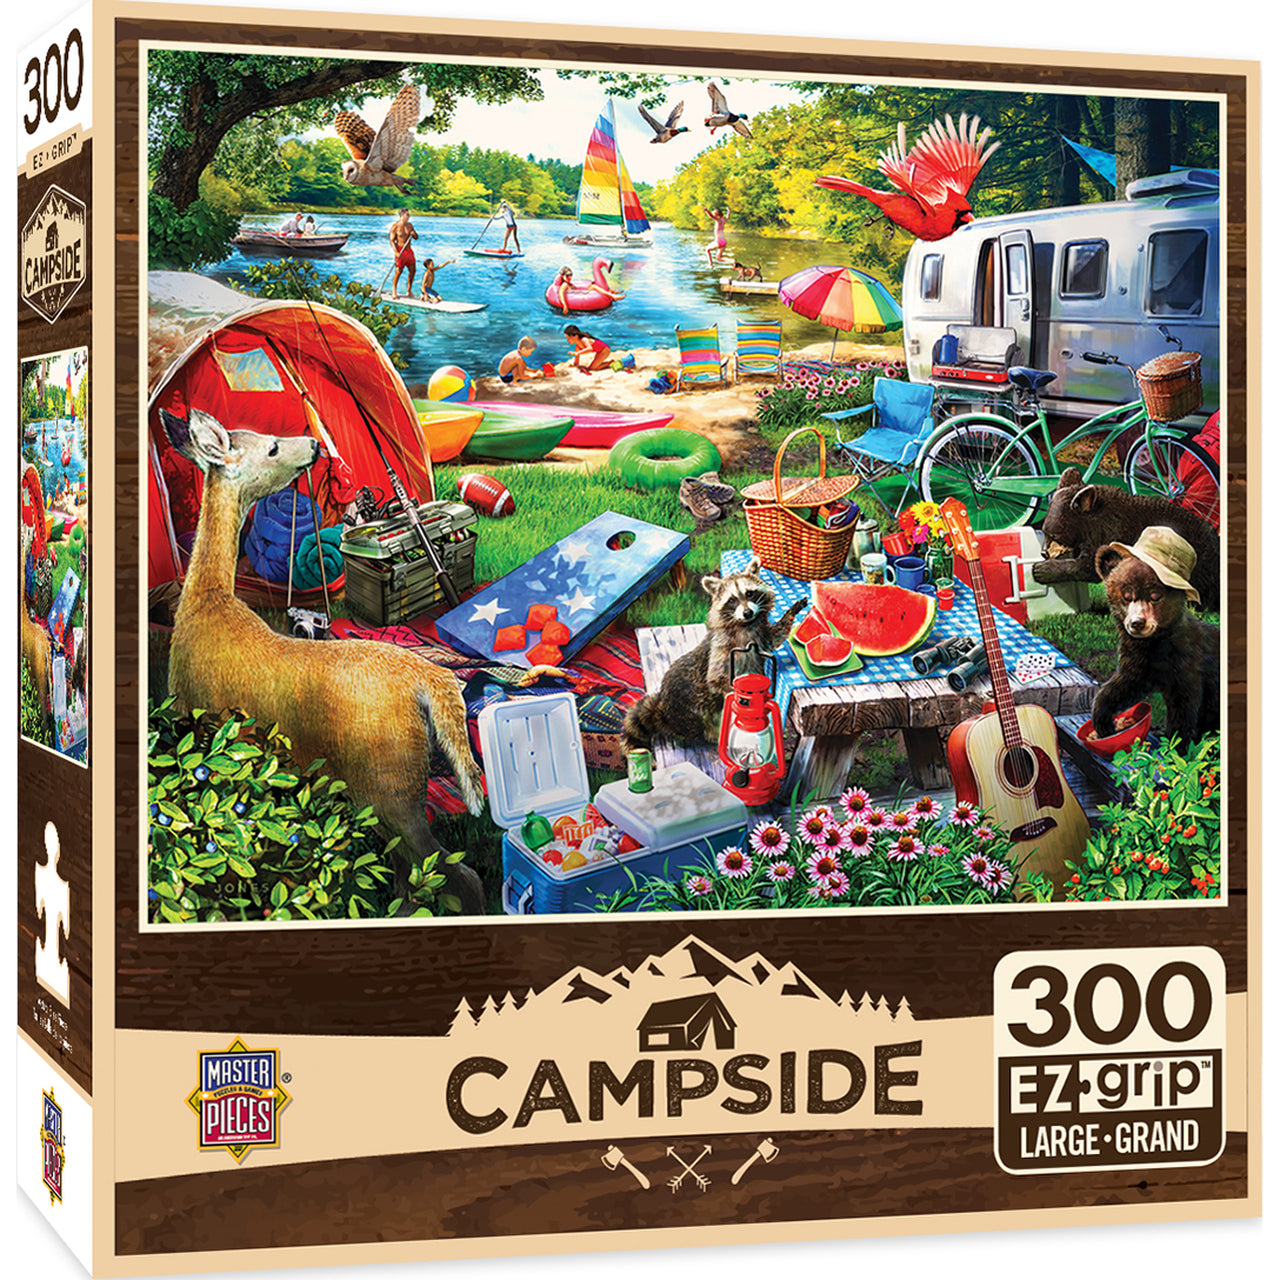 Campside - Little Rascals 300 Piece EZ Grip Puzzle by Masterpieces